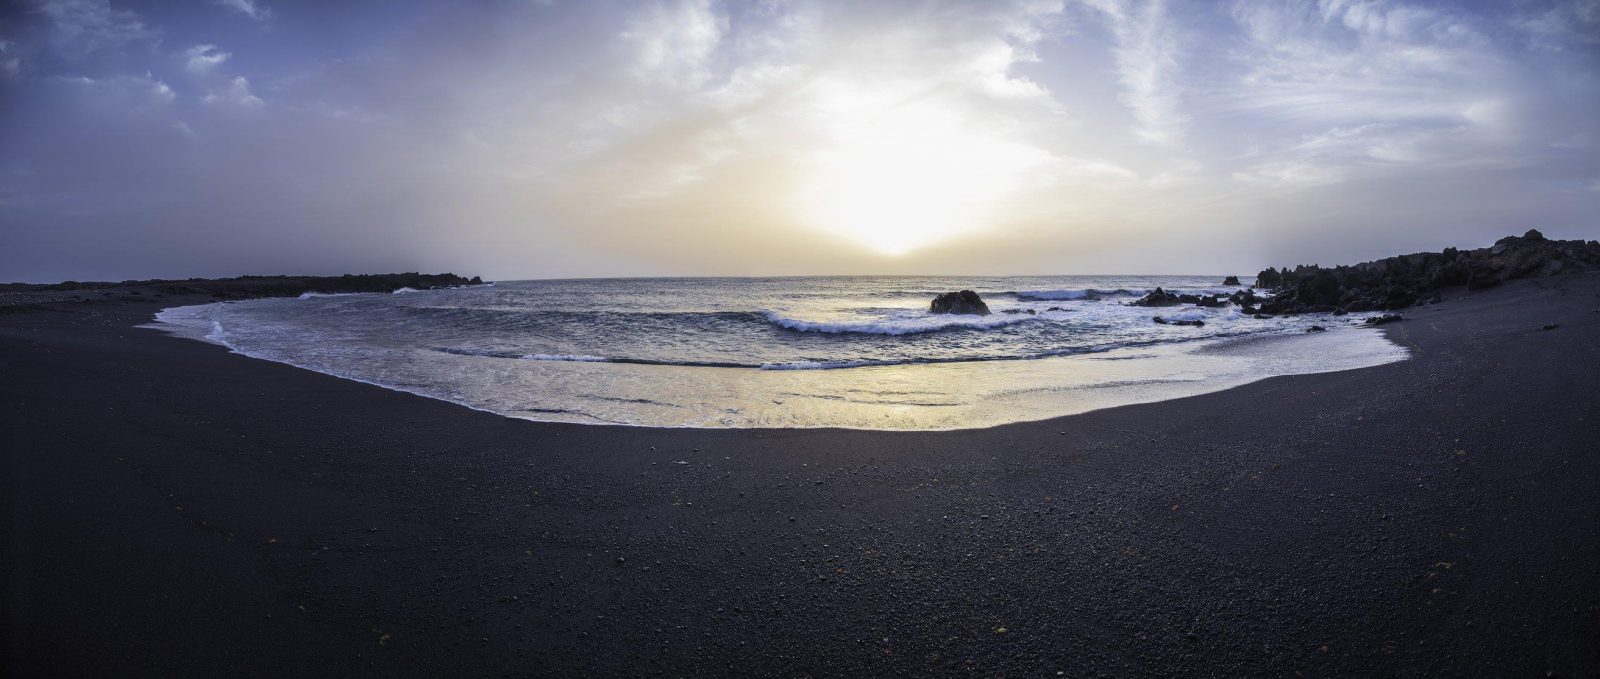 lanzarote - spiaggia nera - cosa vedere a Lanzarote - Istanti In Viaggio